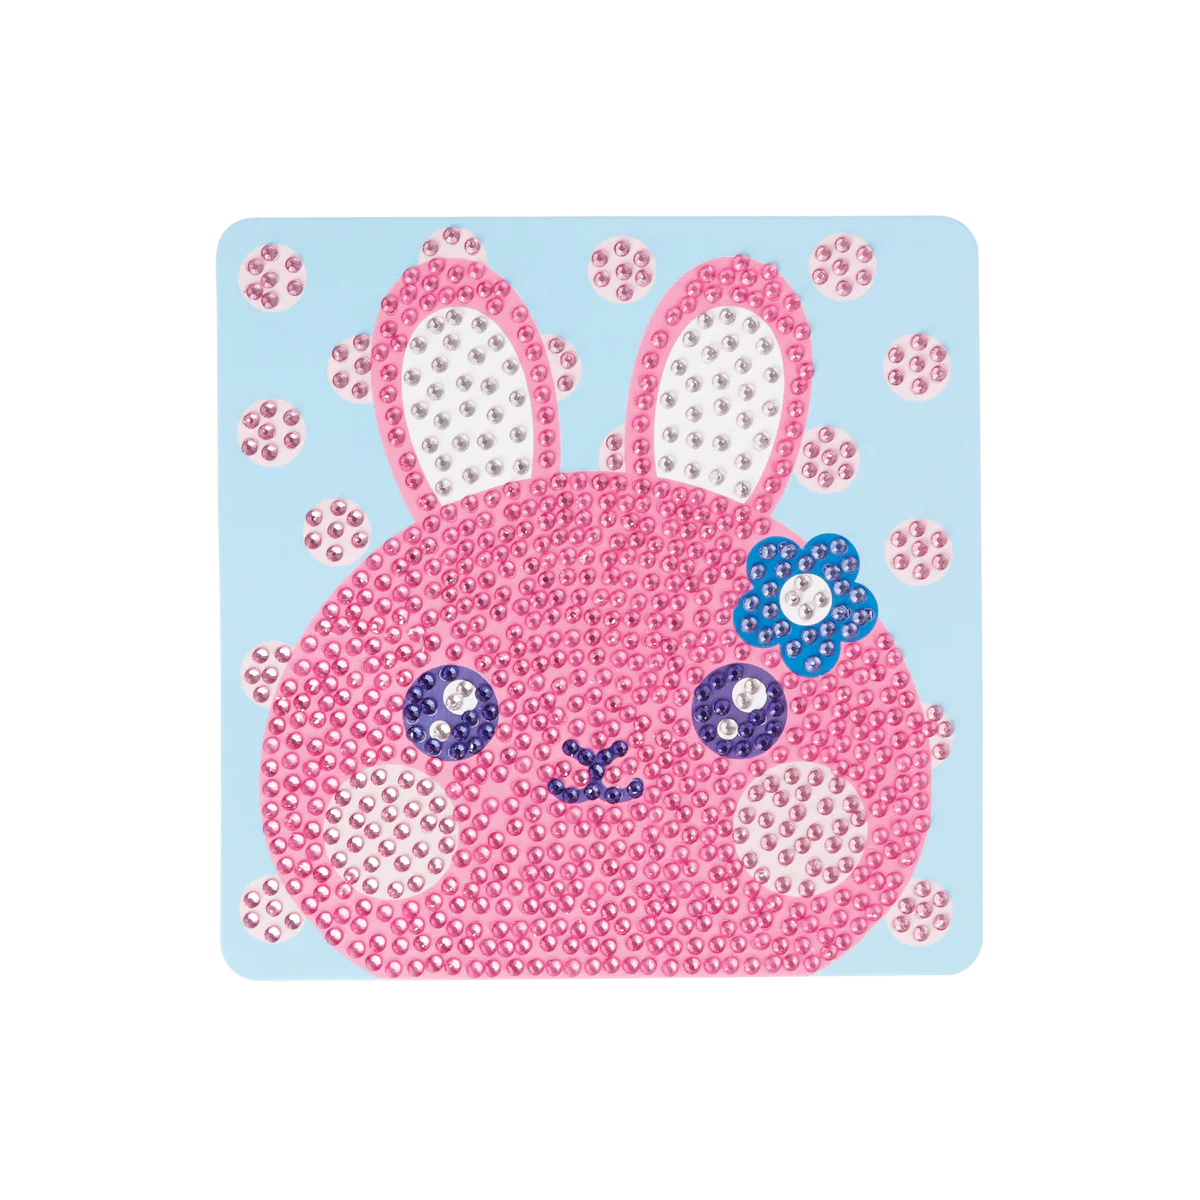 161-086-Razzle-Dazzle-DIY-Mini-Gem-Art-Kit-Bouncy-Bunny-O2.webp?0